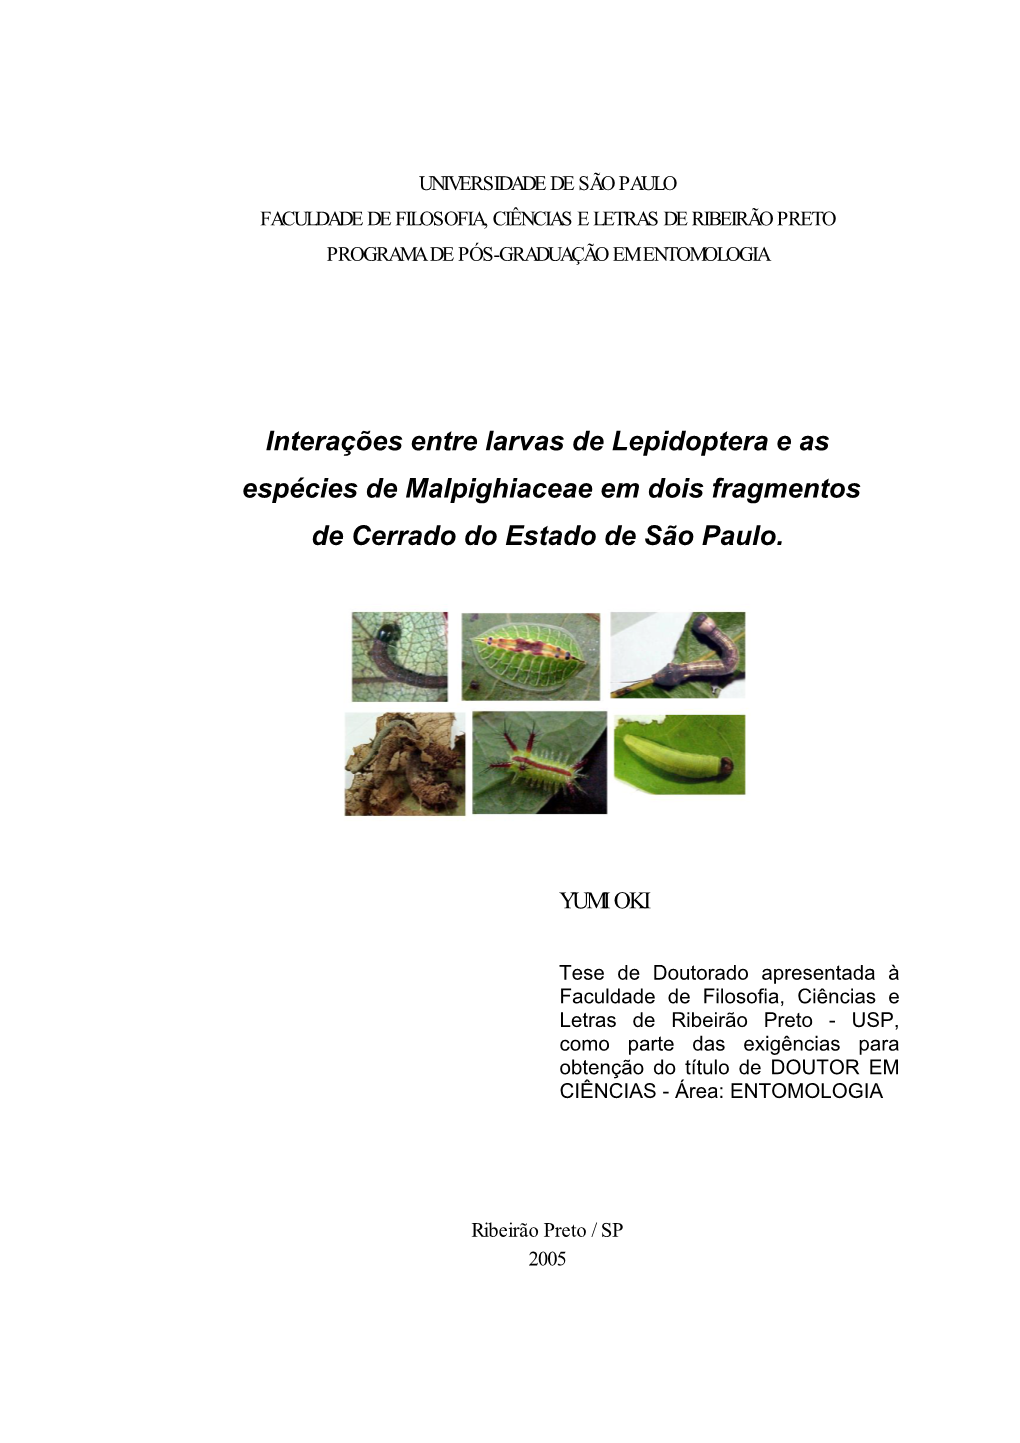 Interações Entre Larvas De Lepidoptera E As Espécies De Malpighiaceae Em Dois Fragmentos De Cerrado Do Estado De São Paulo